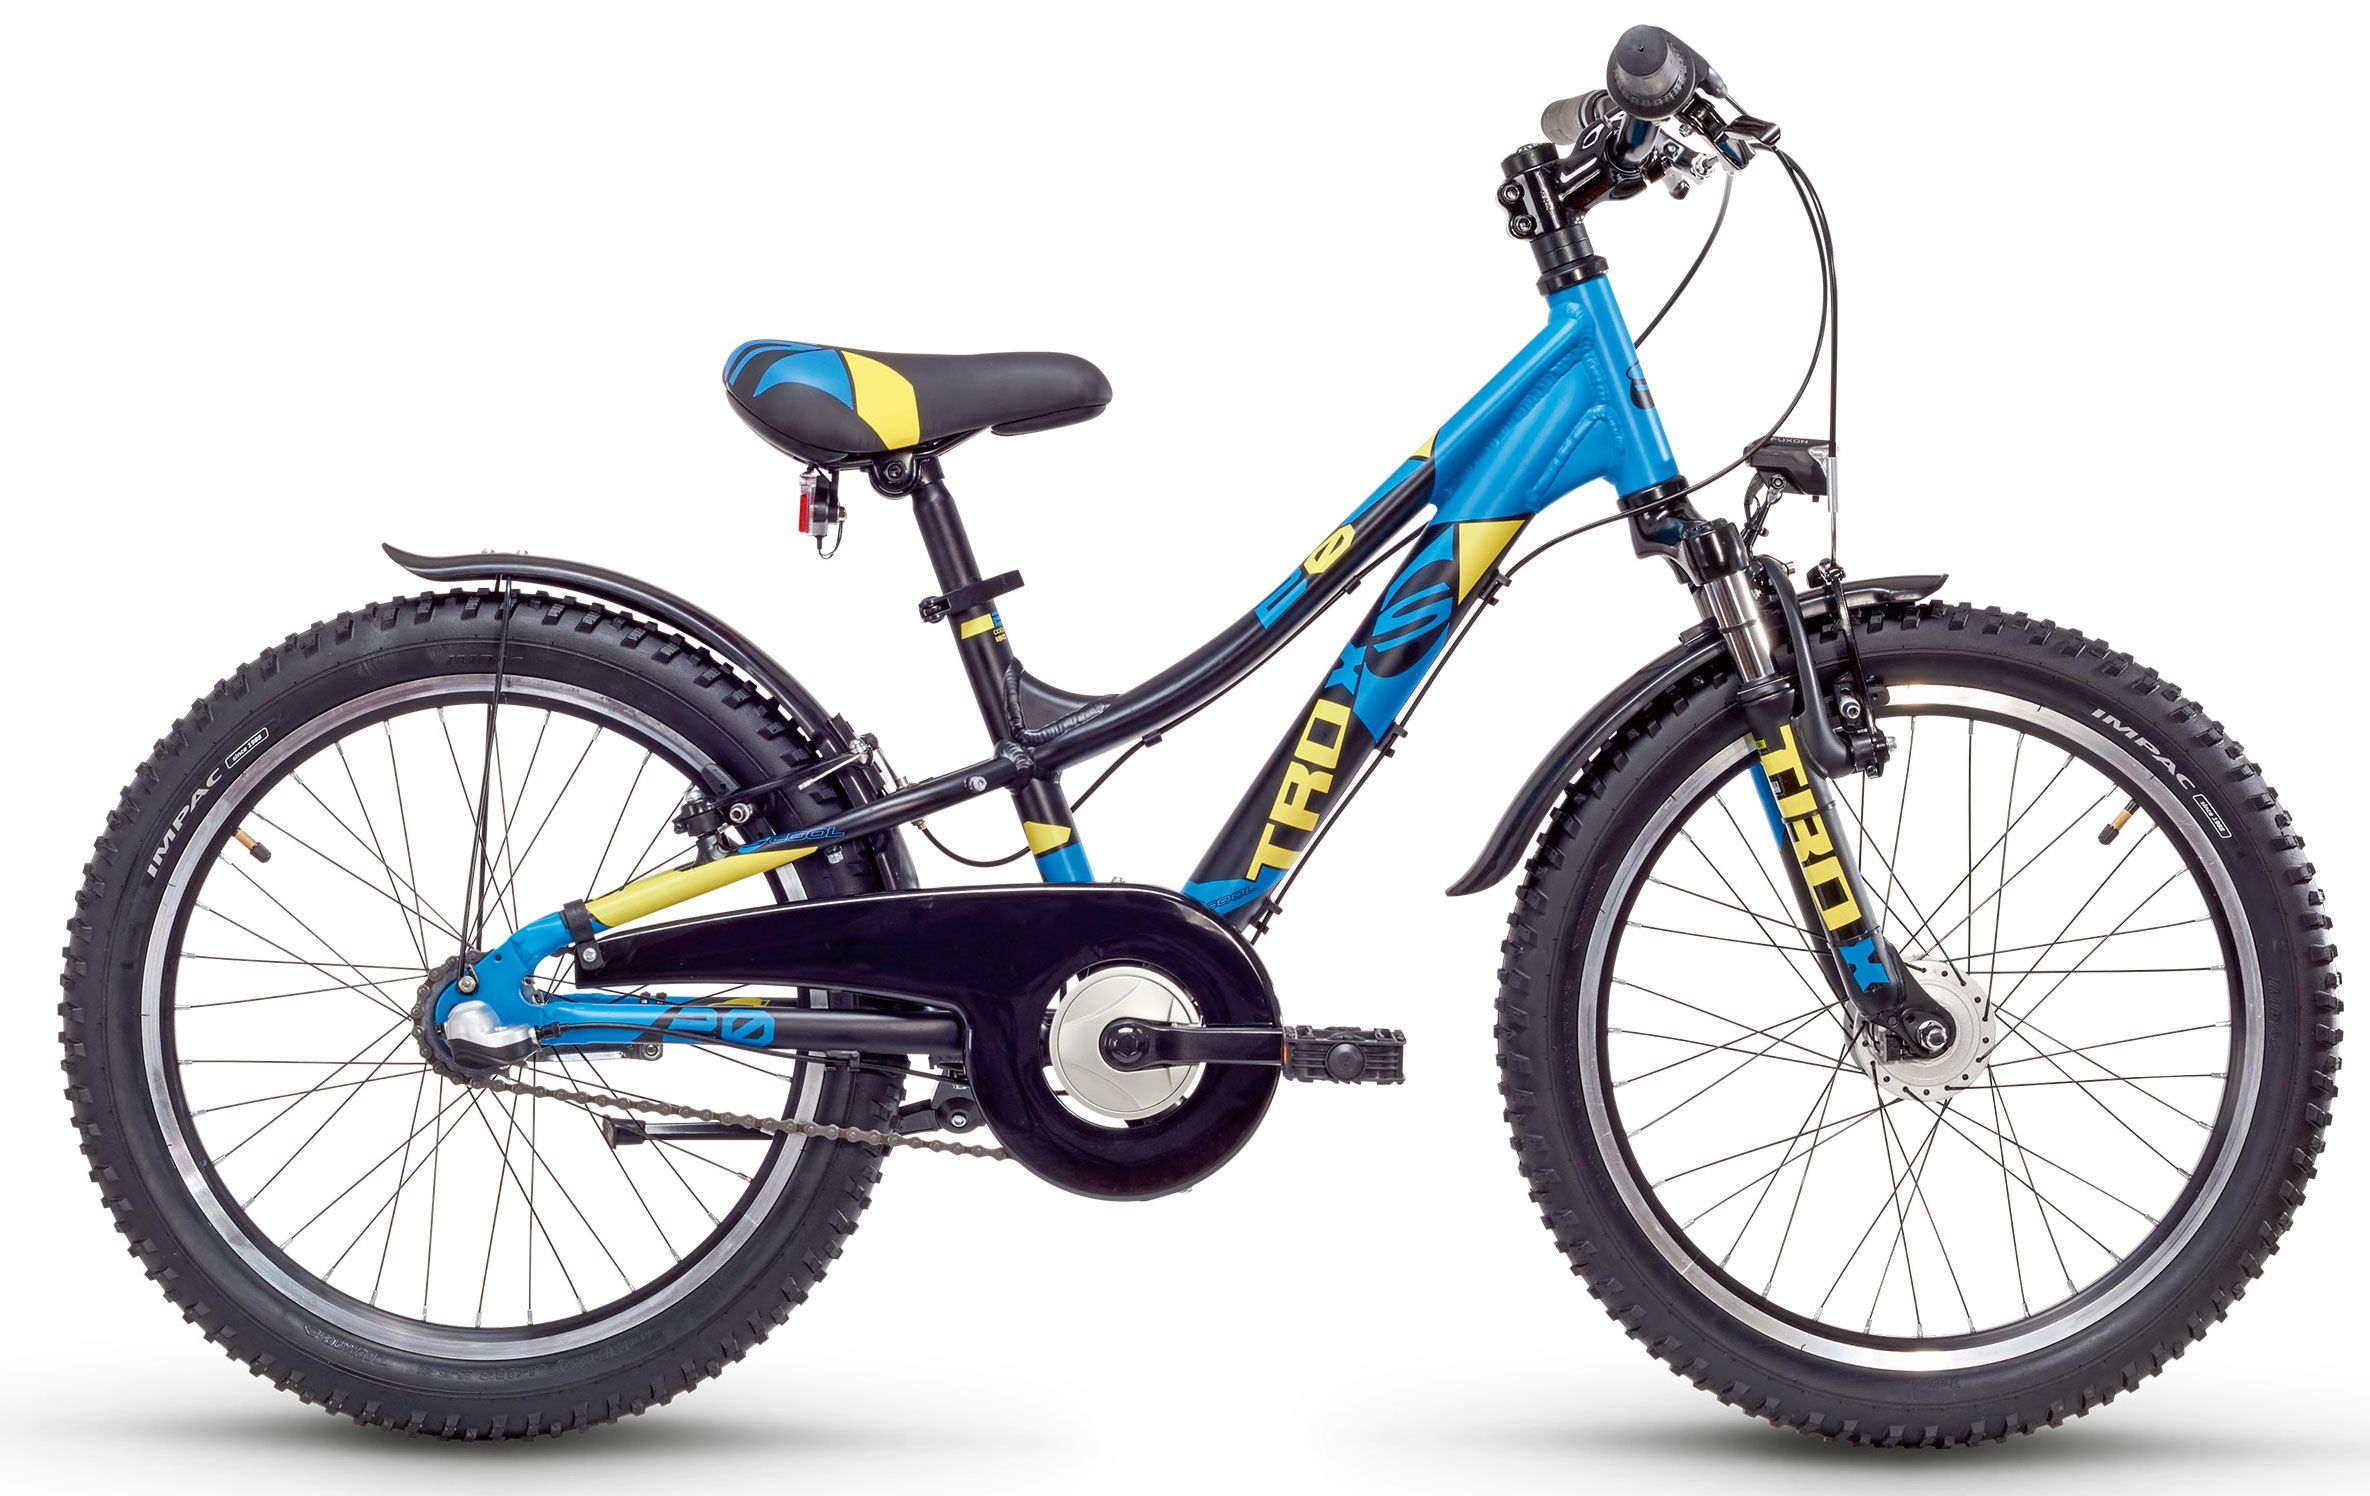  Отзывы о Детском велосипеде Scool troX urban 20-3 Nexus 2017